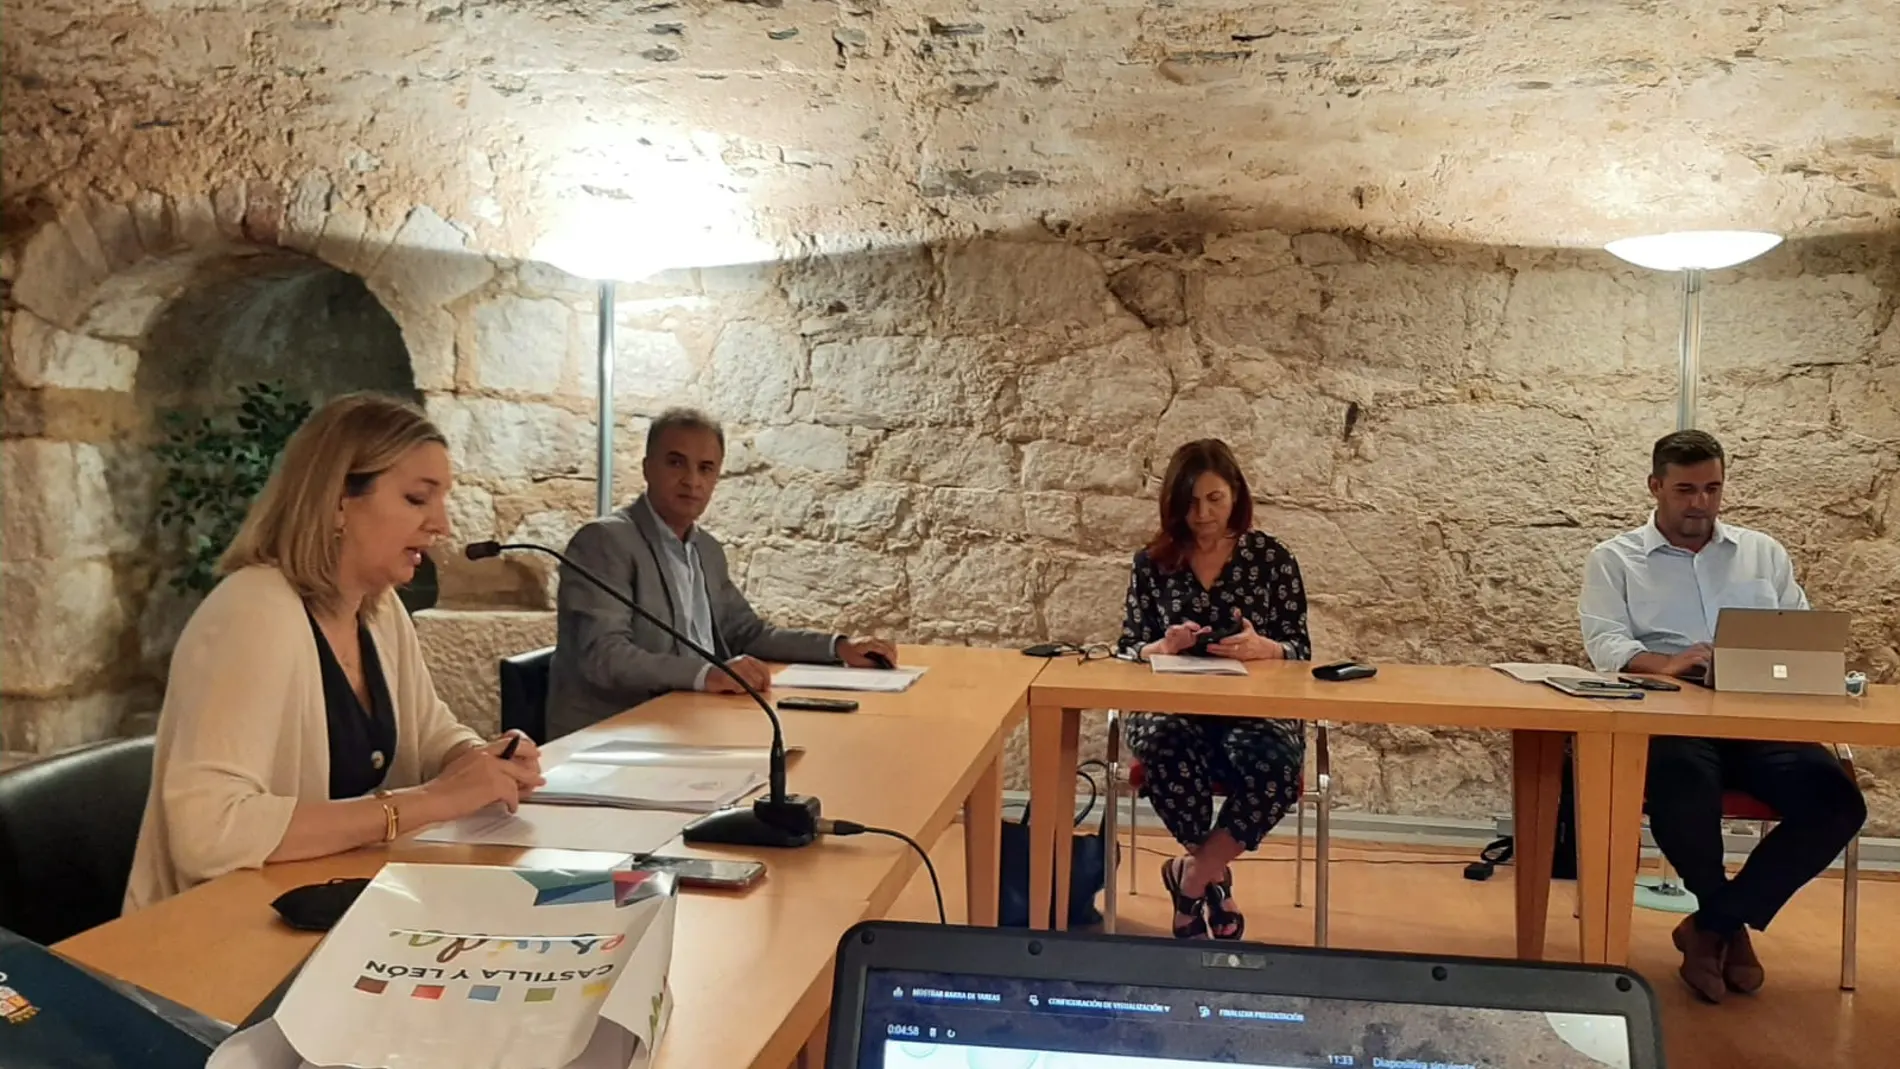 La directora general de Turismo, Estrella Torrecilla, mantiene una reunión desde la Fundación Rei Afonso Henriques, en Zamora, con los presidentes de turismo de las regiones portuguesas Porto e Norte